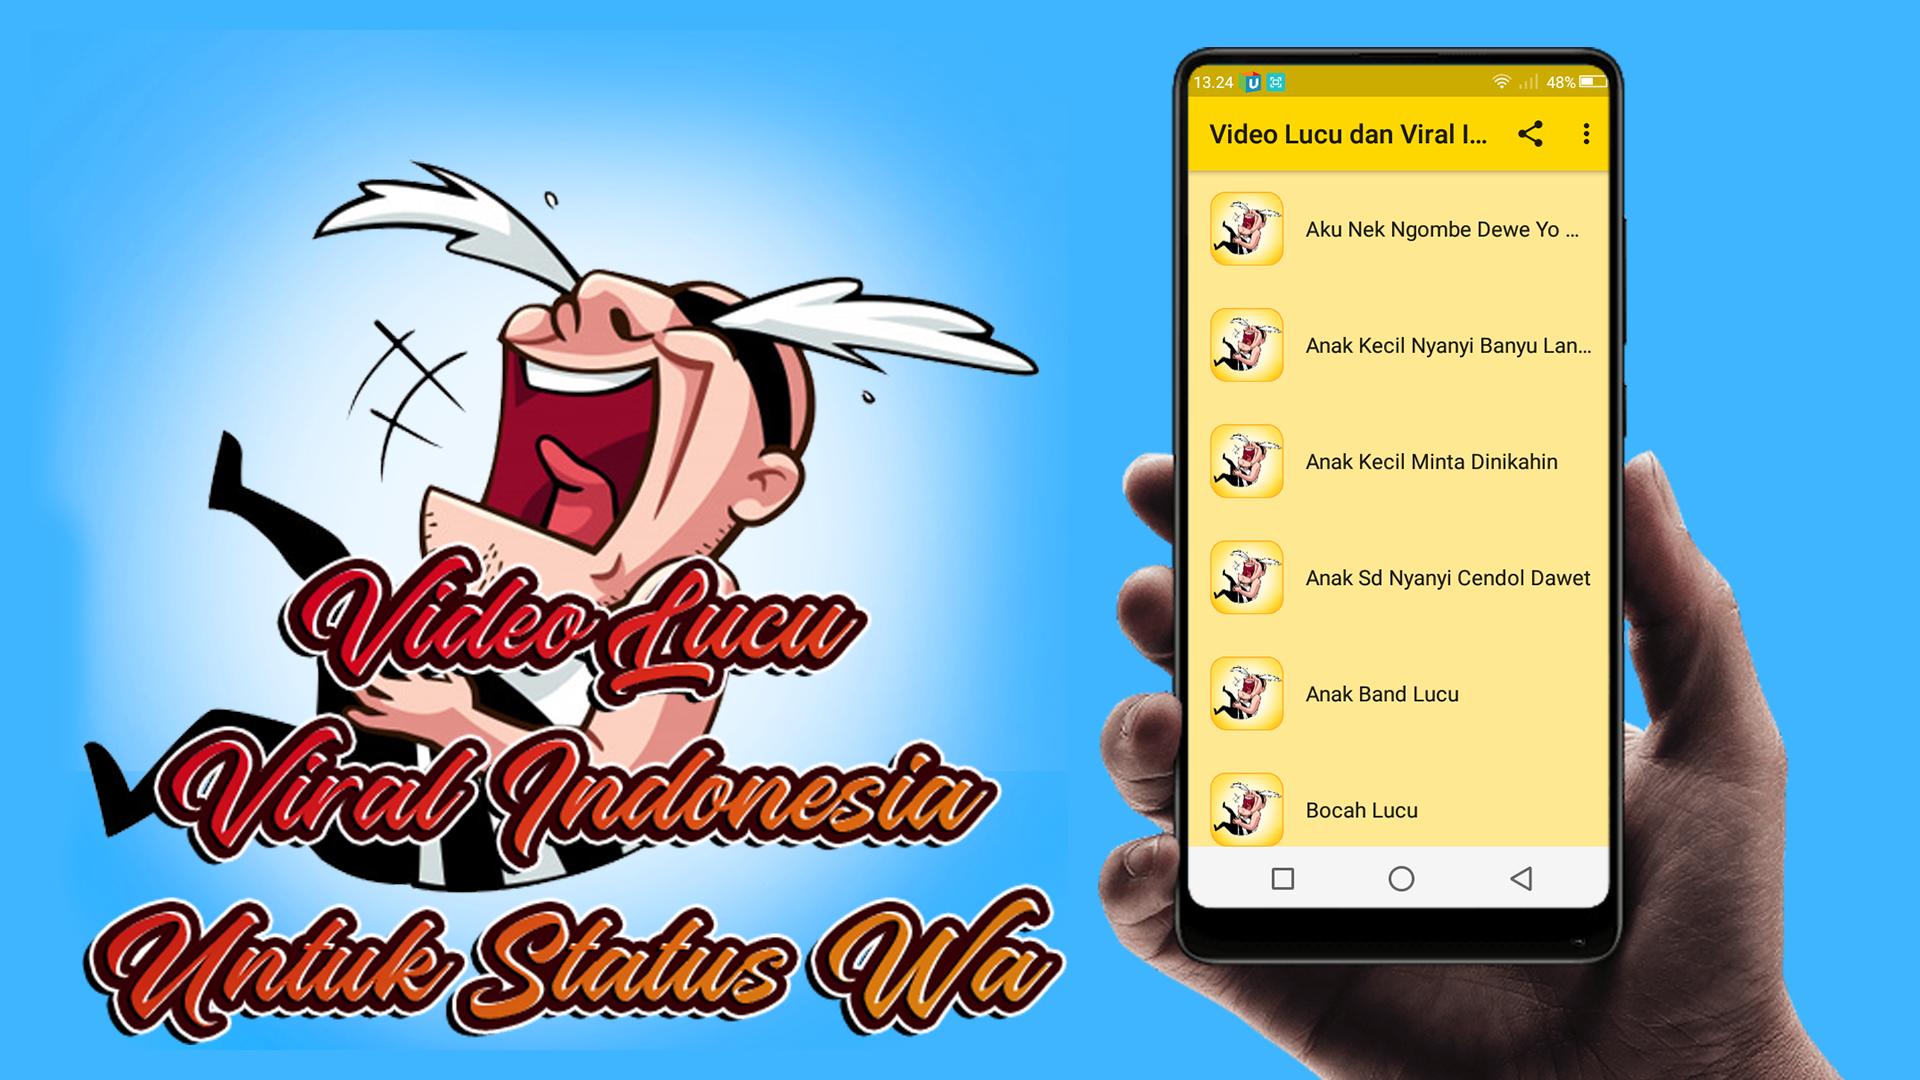 Video Lucu Dan Viral Indonesia Untuk Status Wa For Android Apk Download